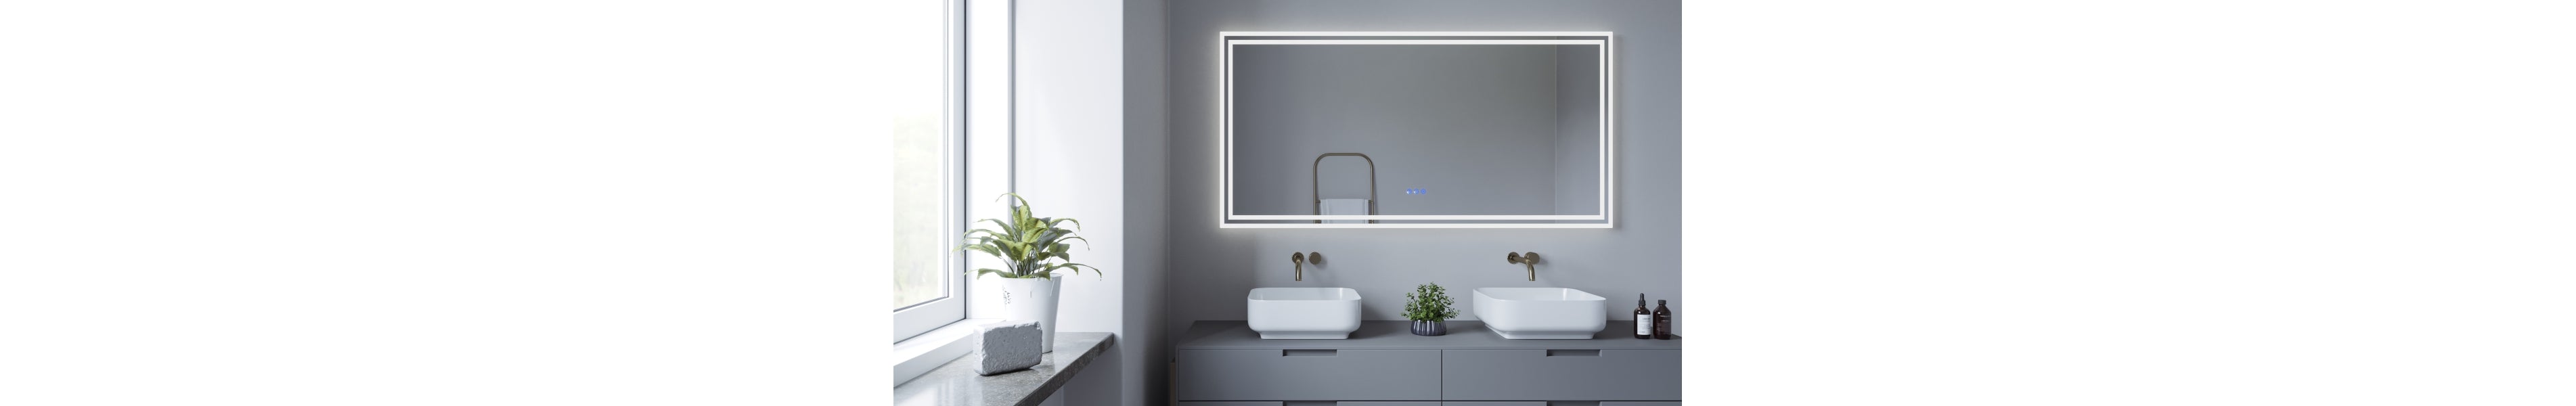 Badspiegel mit LED Beleuchtung kaufen - Balerma